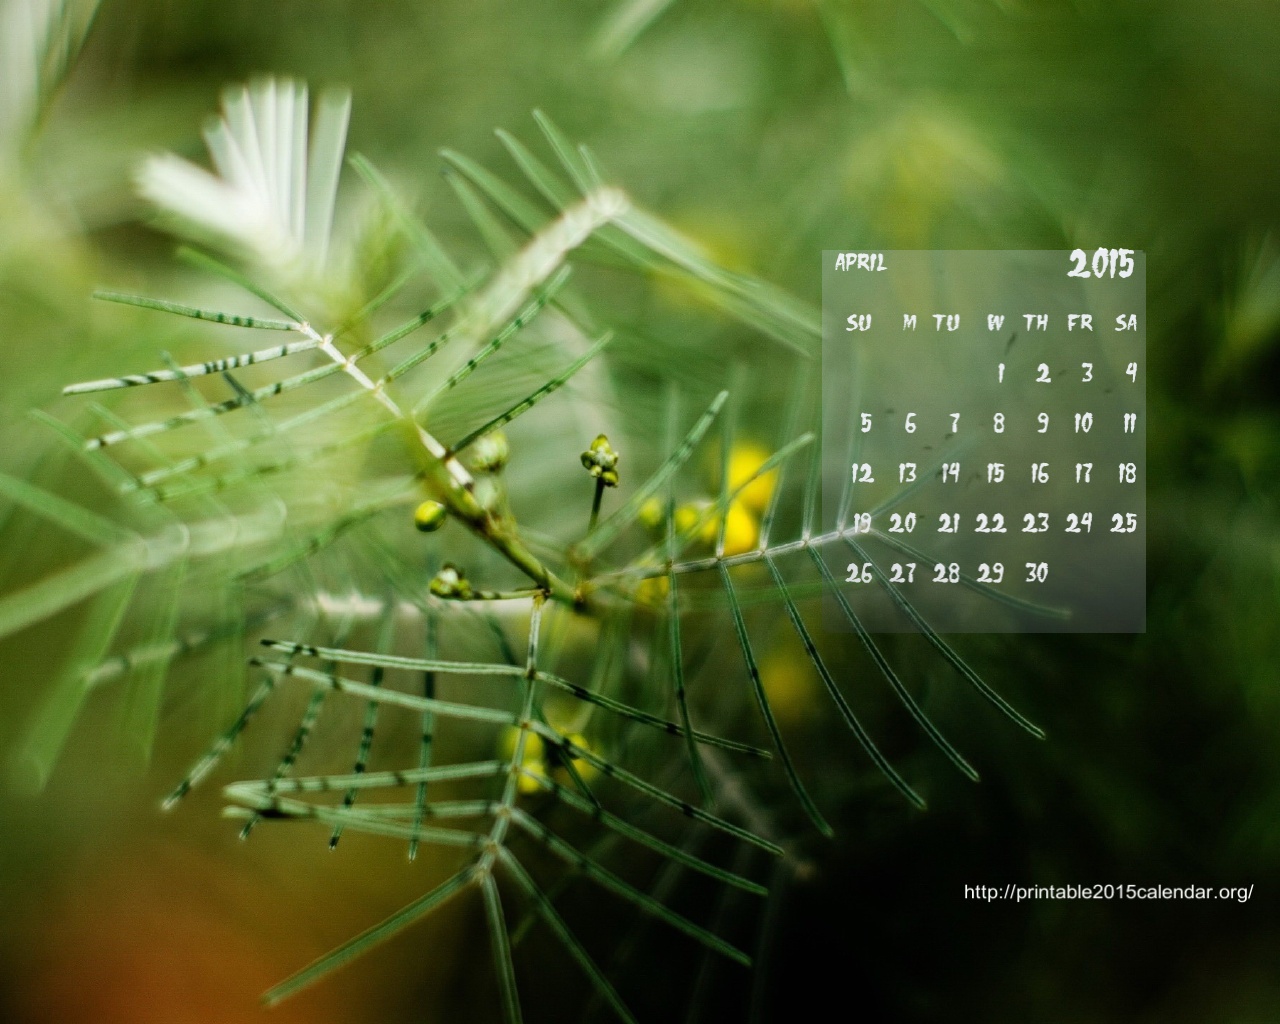 2015 Calendar Background Images Calendar Template 2016 1280x1024